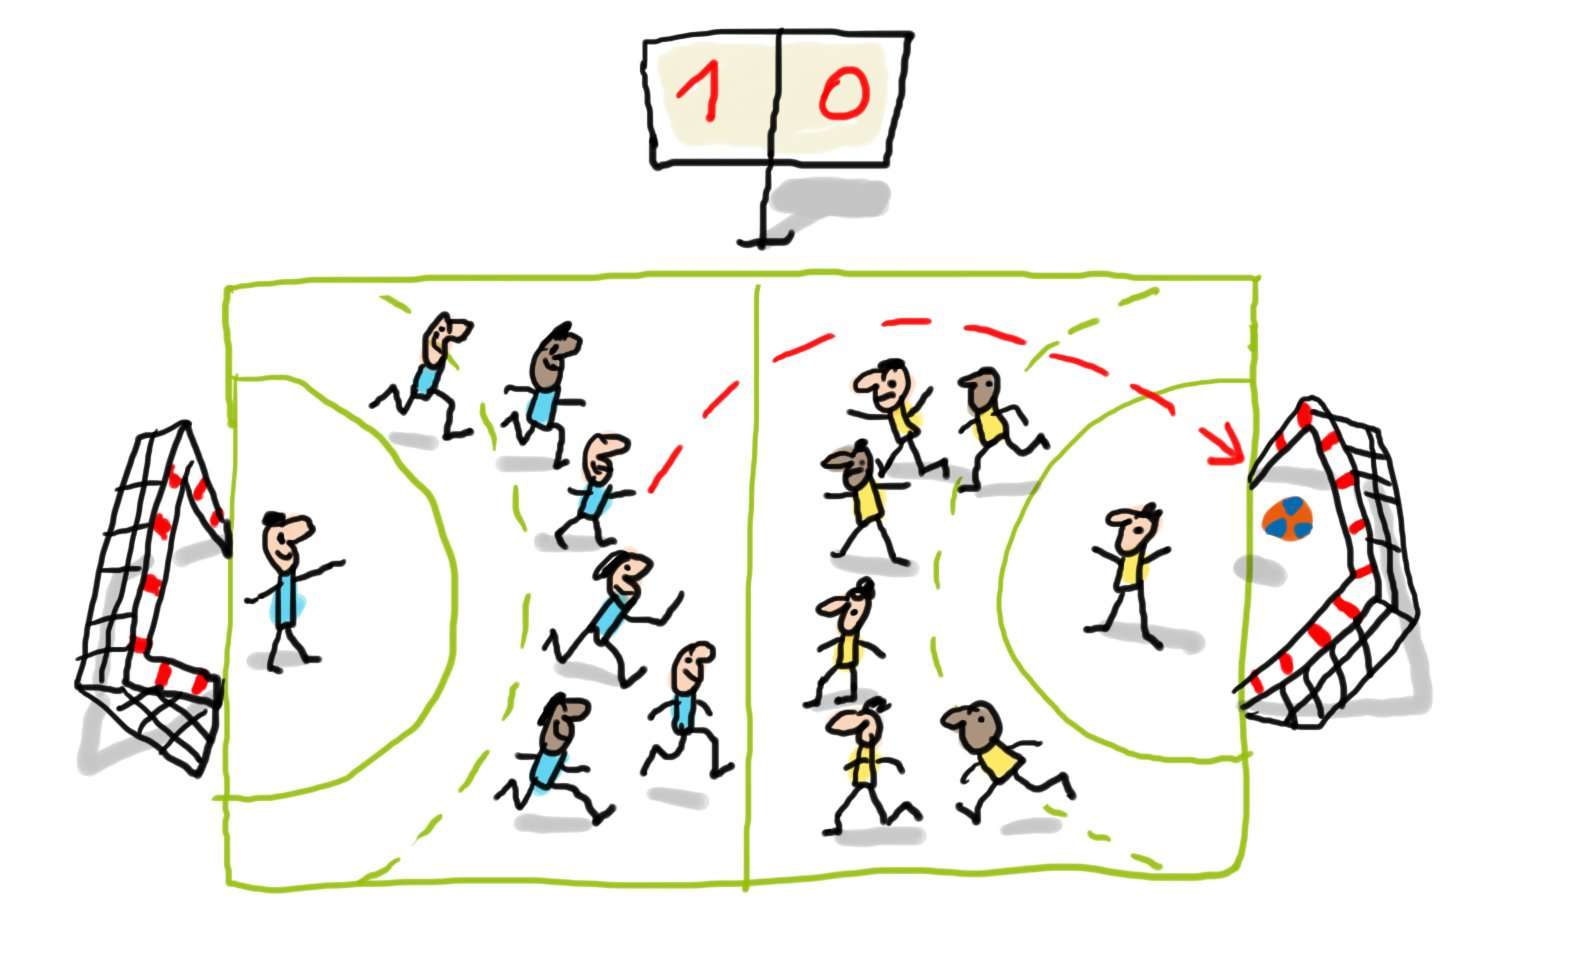 Le jeu d’équipe au handball : Comment se gagne un match de handball ?